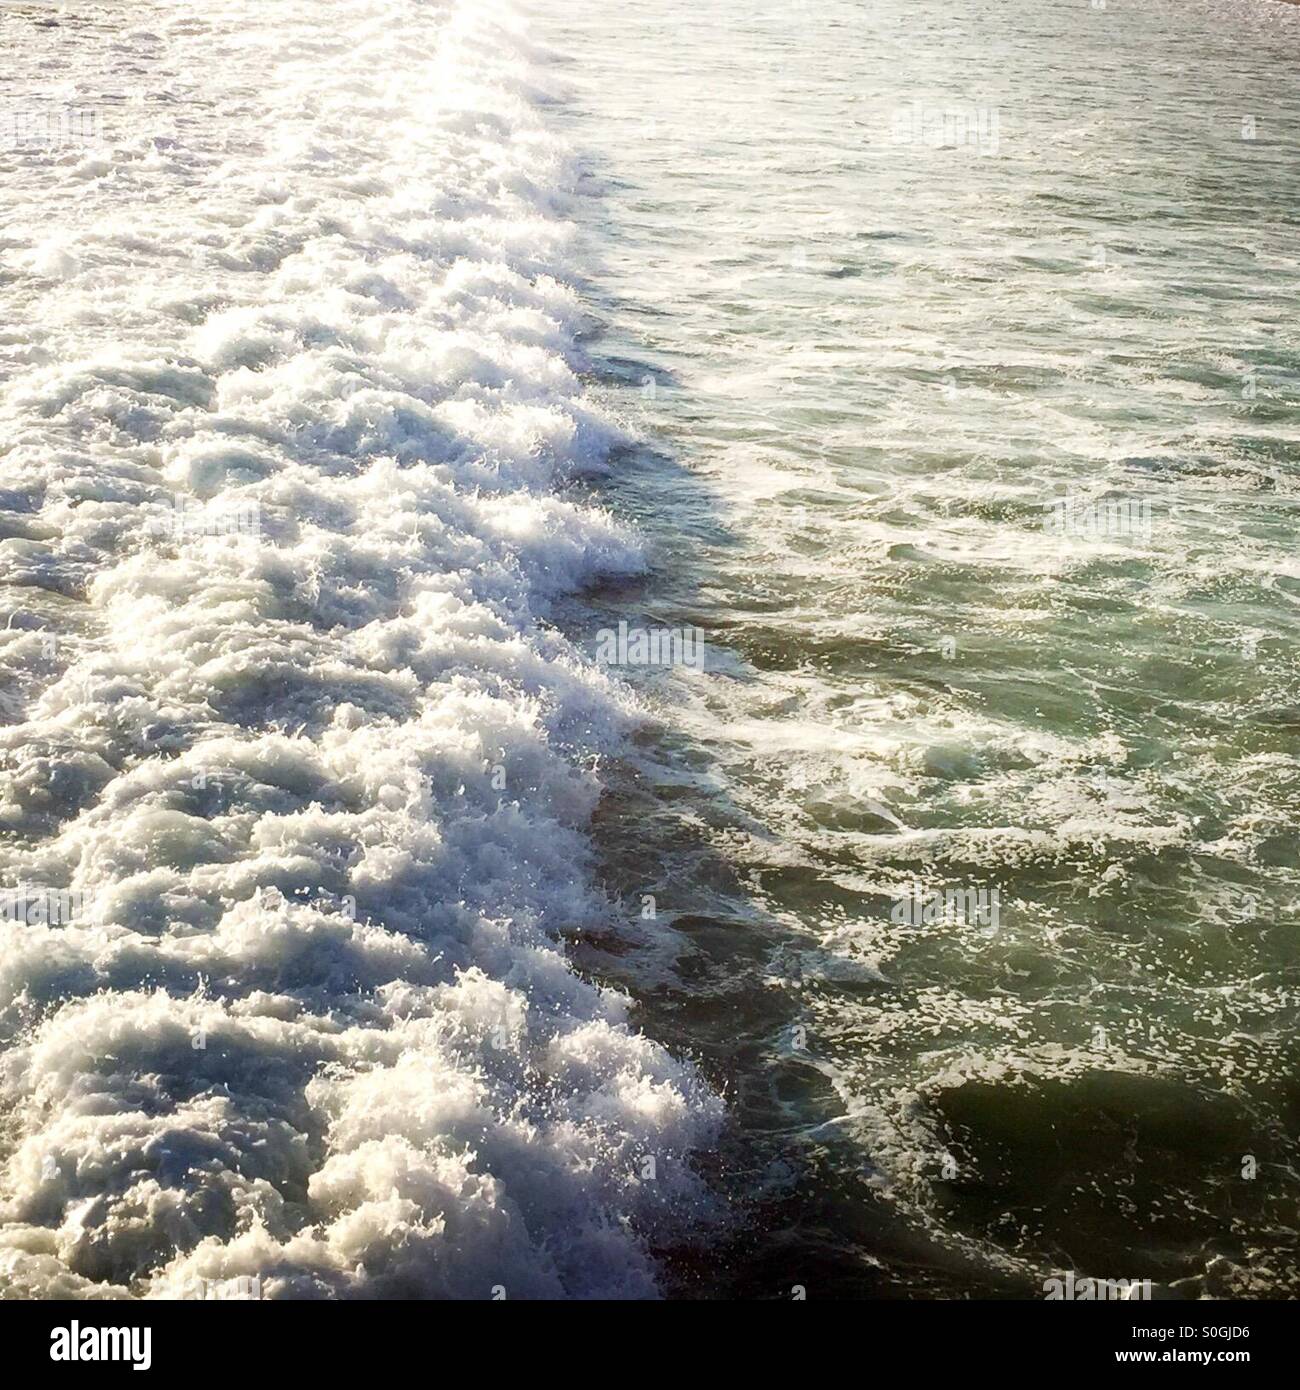 Whitewater von einer Welle in Rauschen. Manhattan Beach, Kalifornien USA. Stockfoto